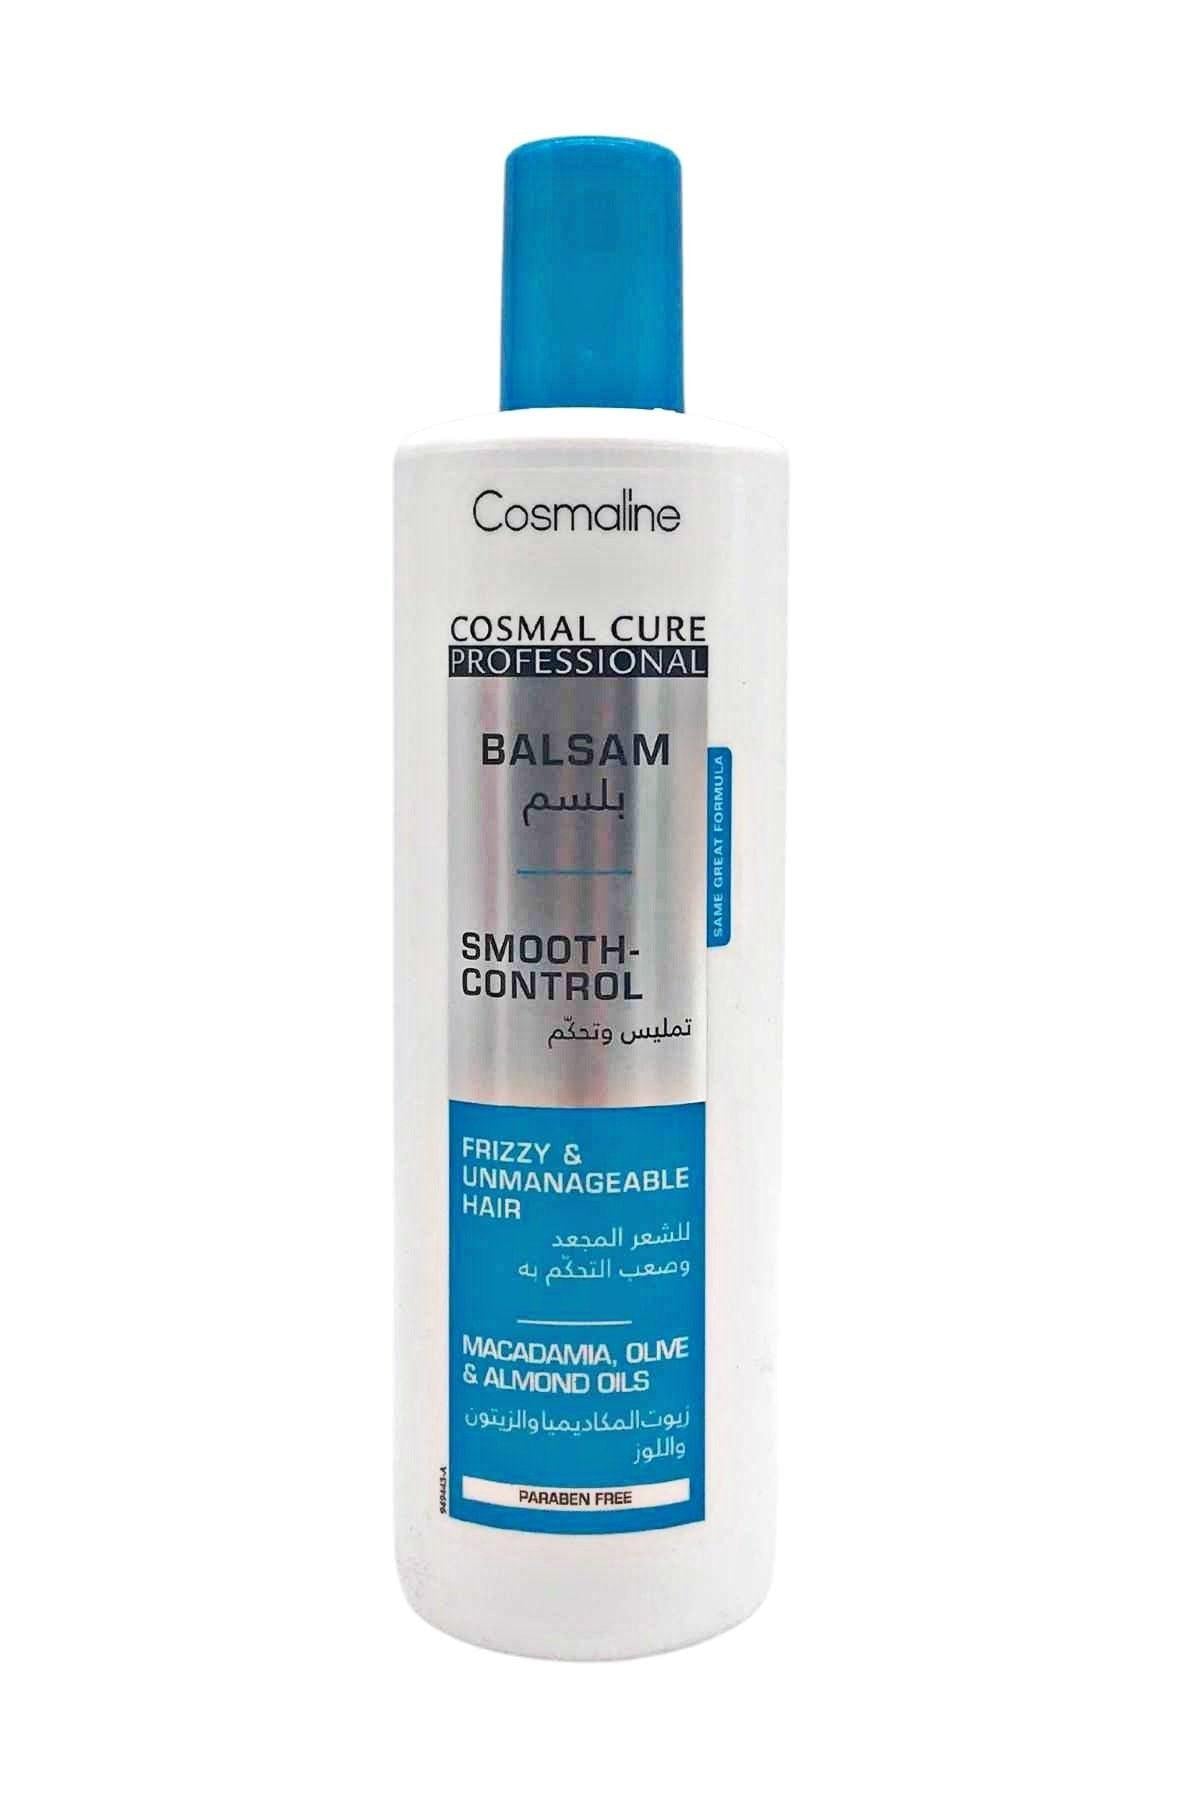 Cosmaline Cosmal Cure Smooth-Control Conditioner 500ml